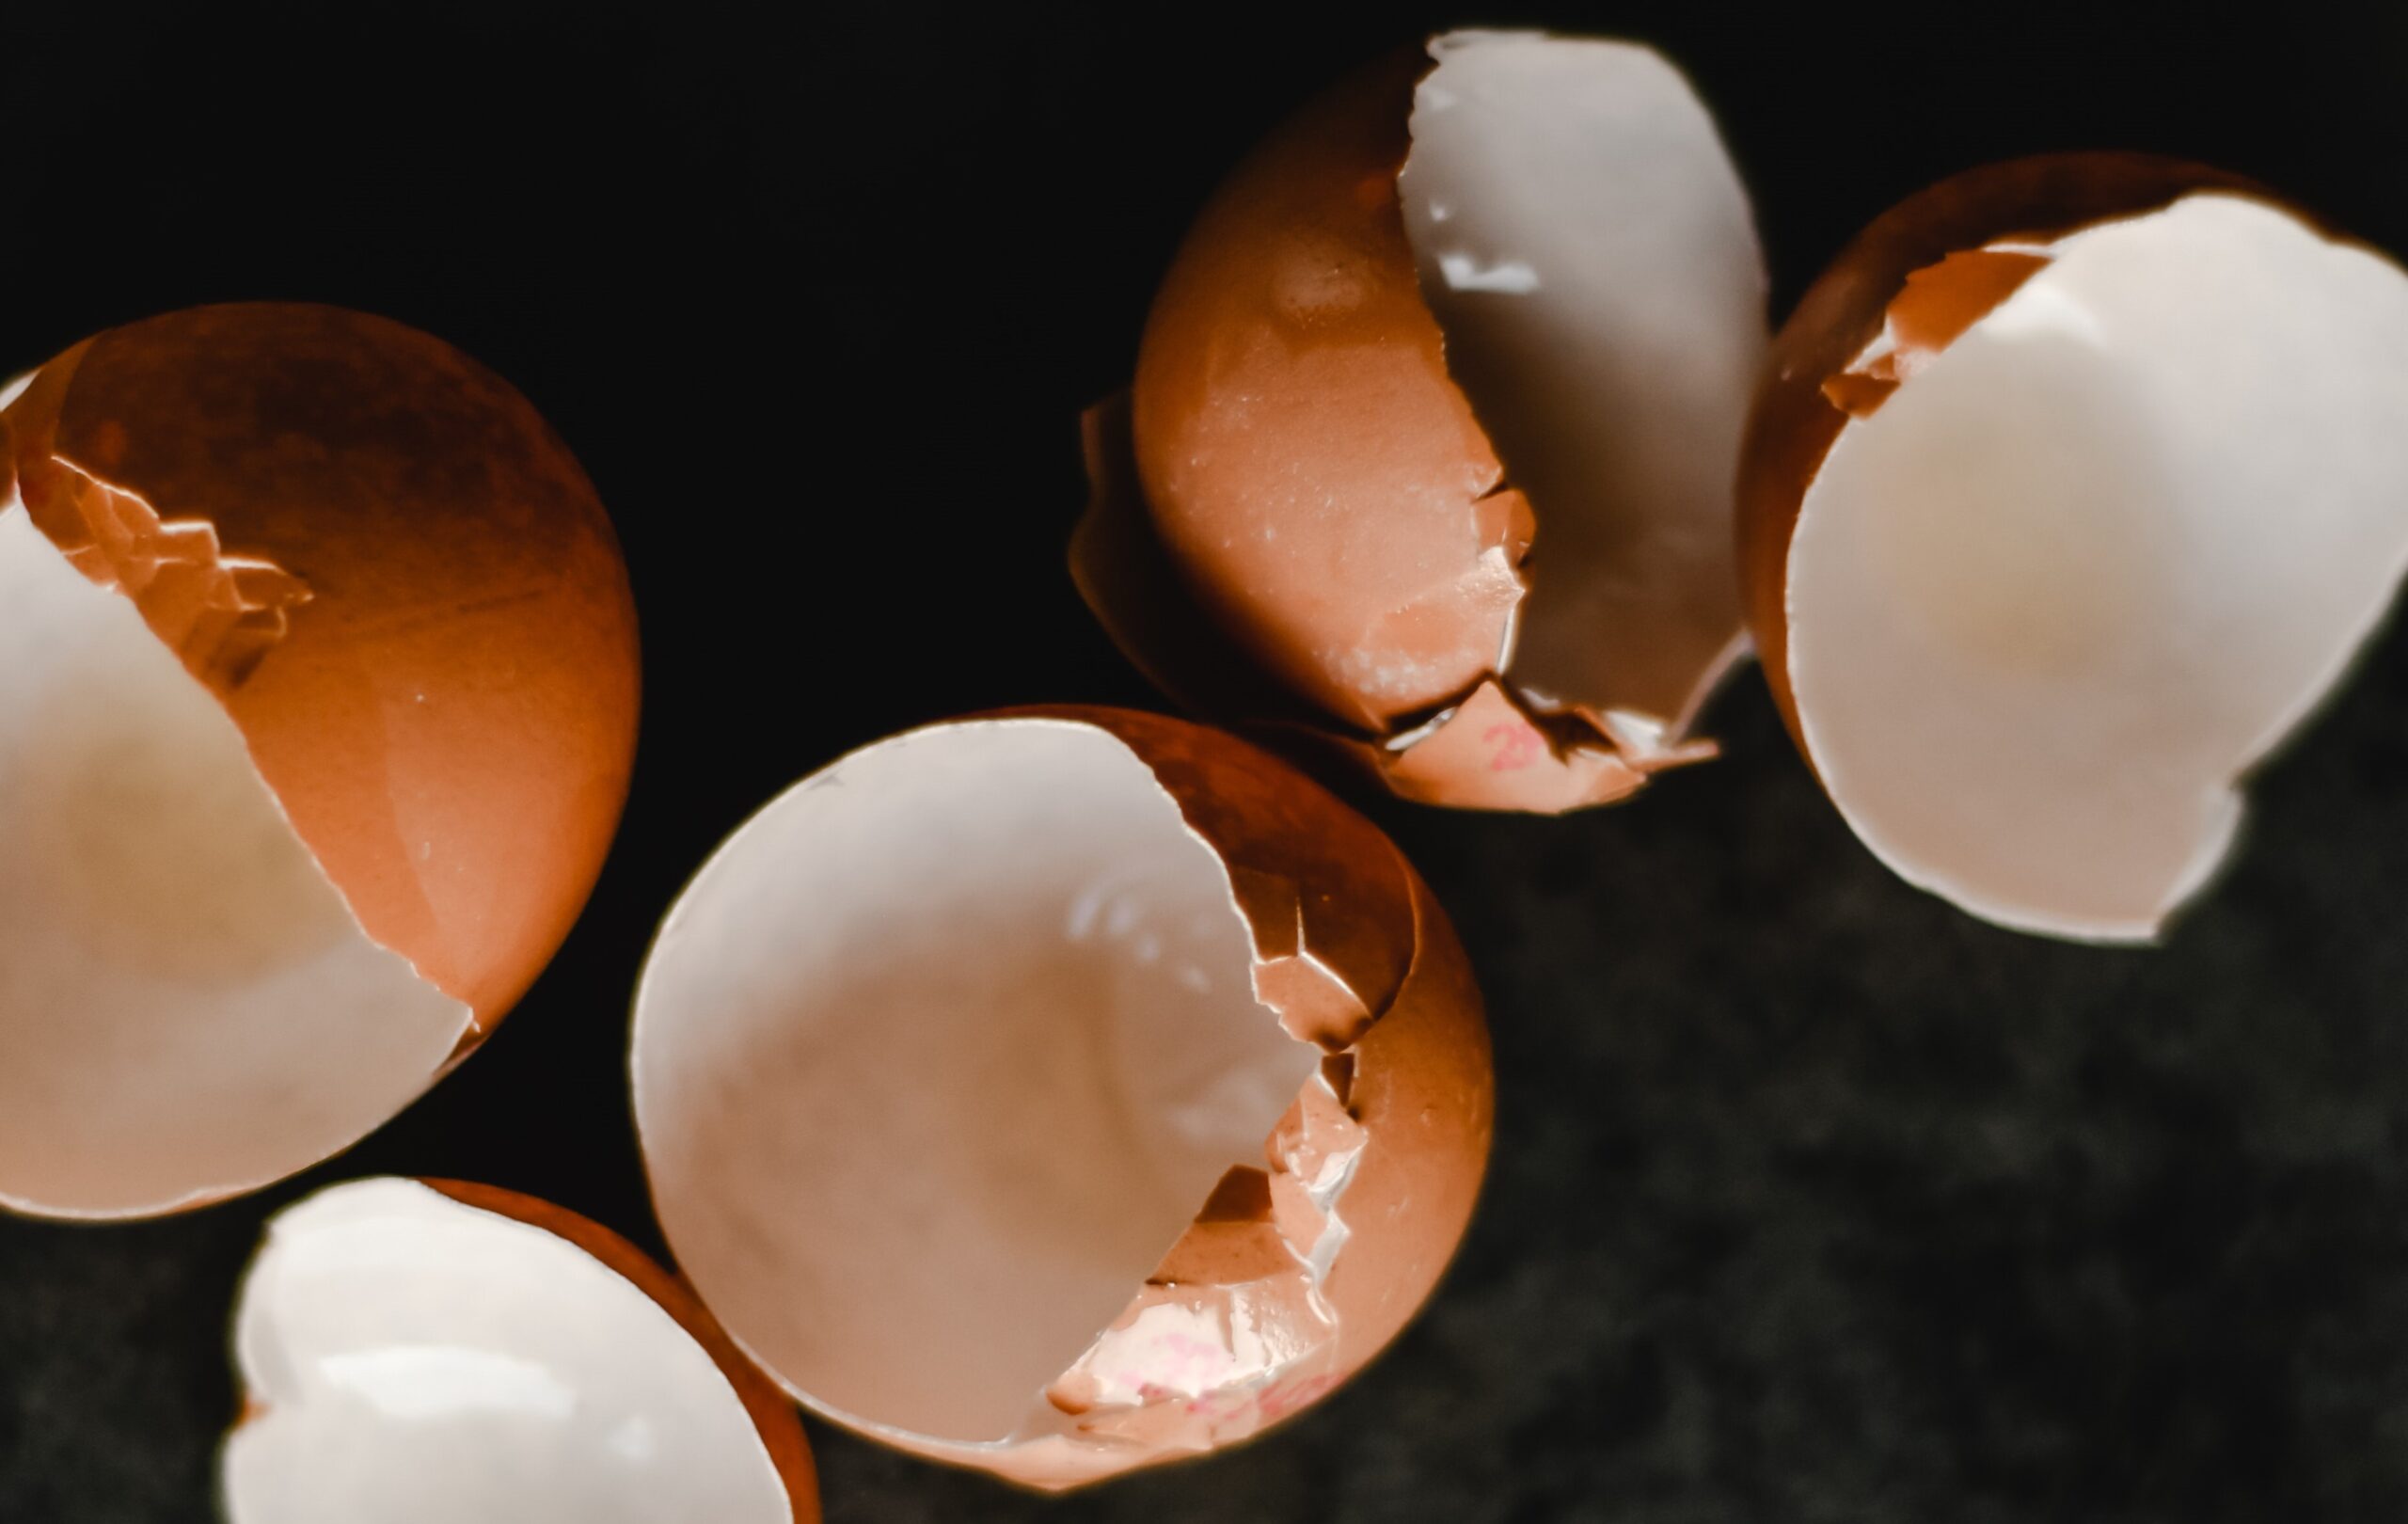 Palloncino e uova